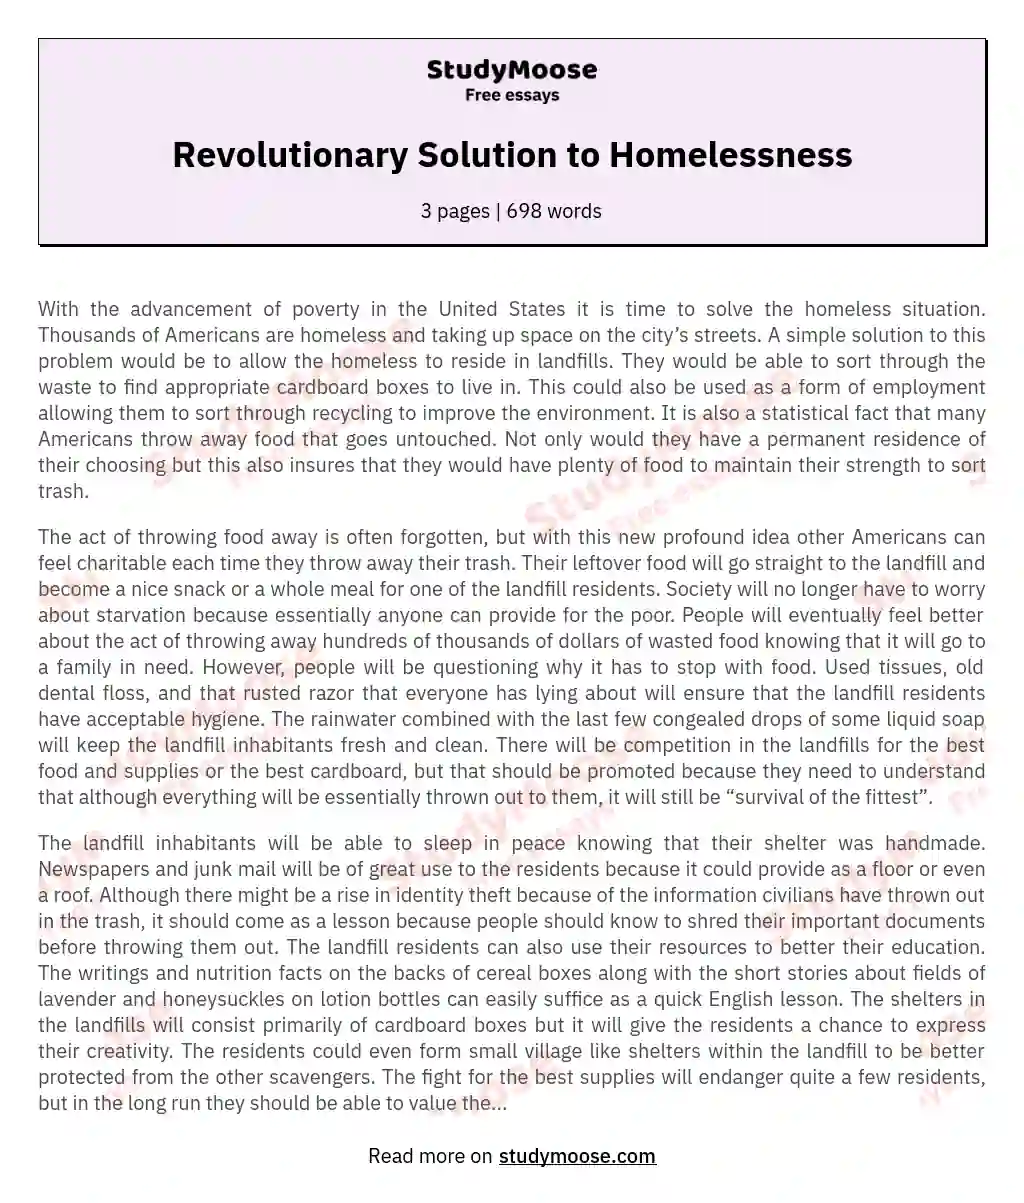 Revolutionary Solution to Homelessness essay